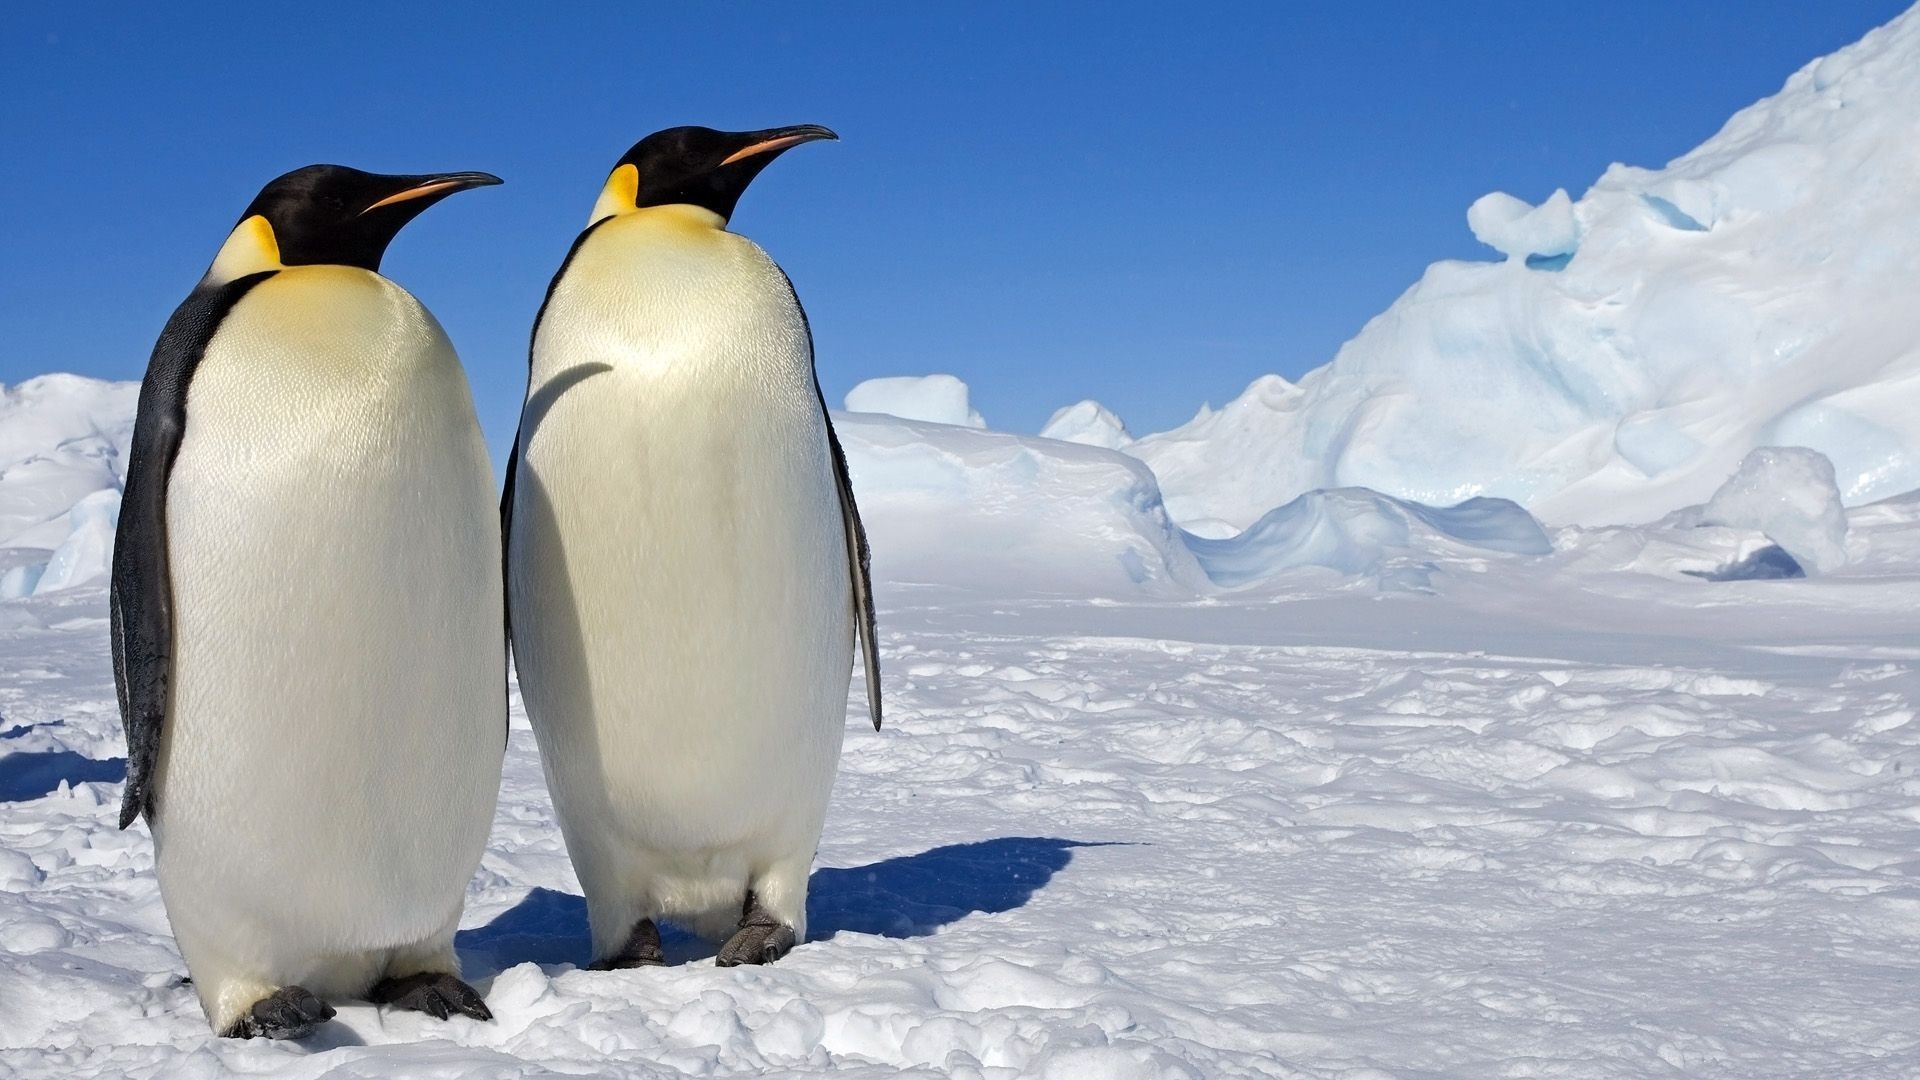 HD penguin wallpaper, High-quality image, Desktop enhancement, Stunning visuals, 1920x1080 Full HD Desktop